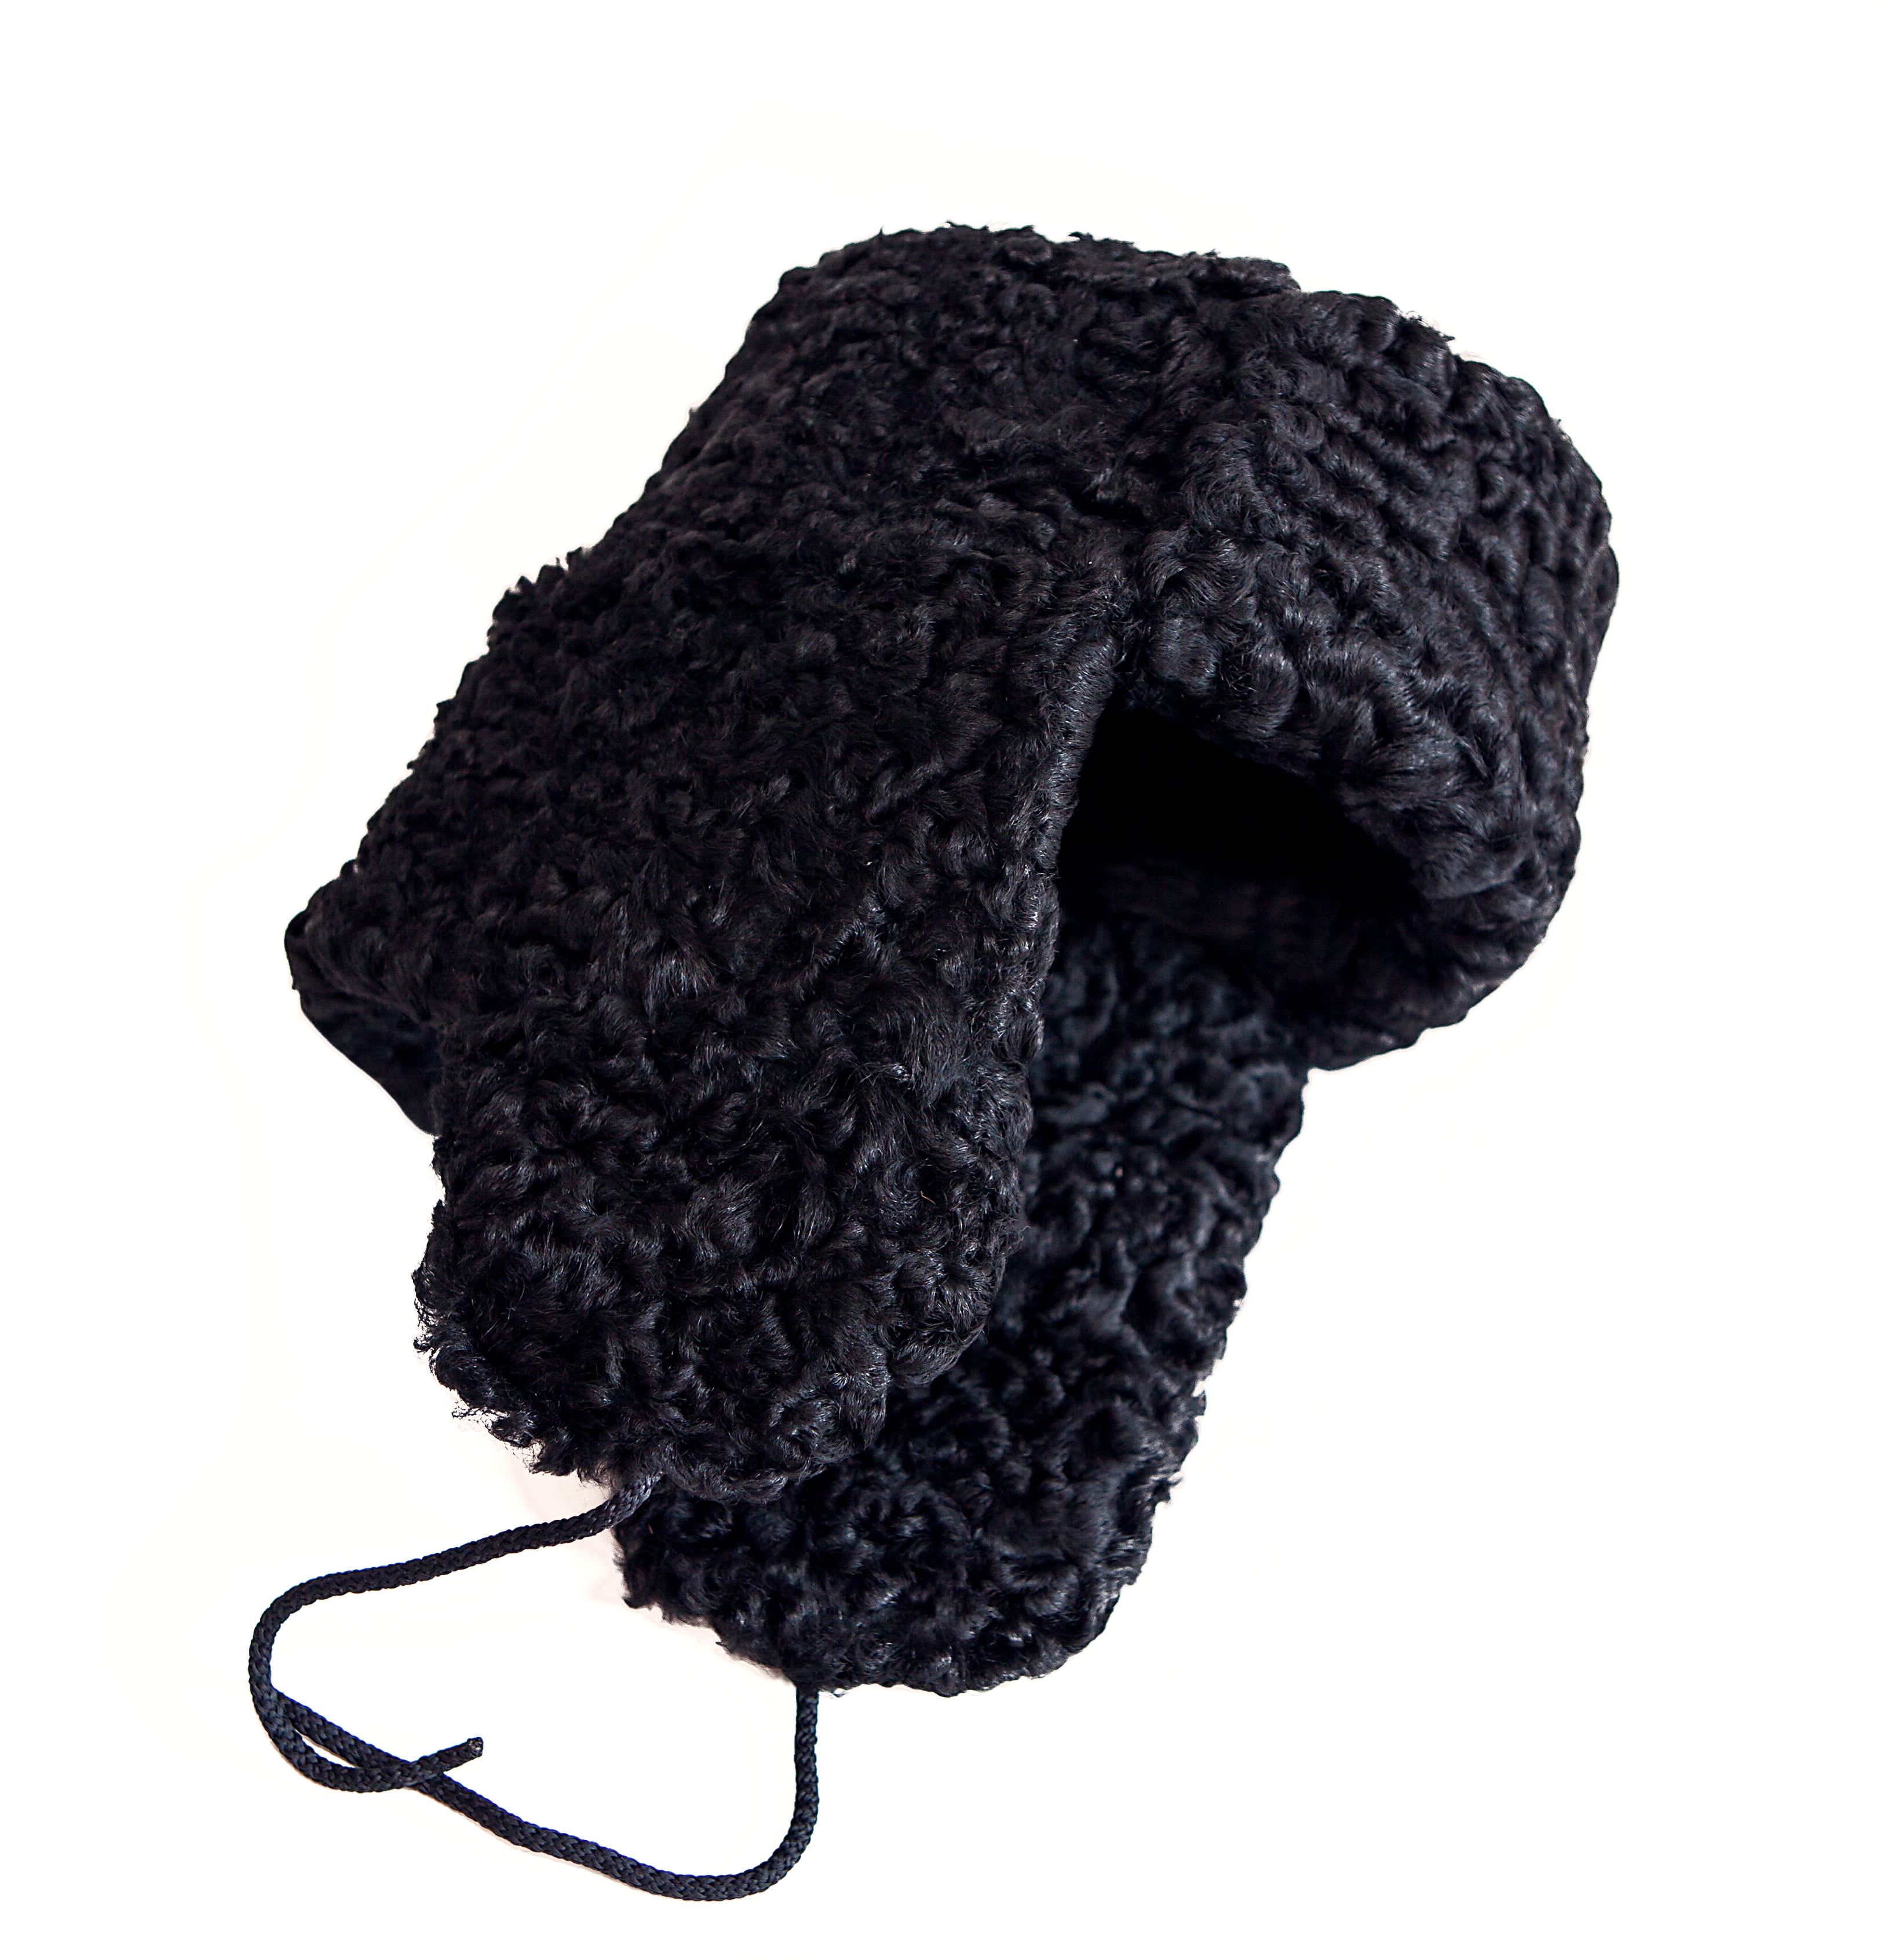 Viacle Khabib Nurmagomedov Custom Hat Black Fashion Comfortable Soft Cotton Denim Hat